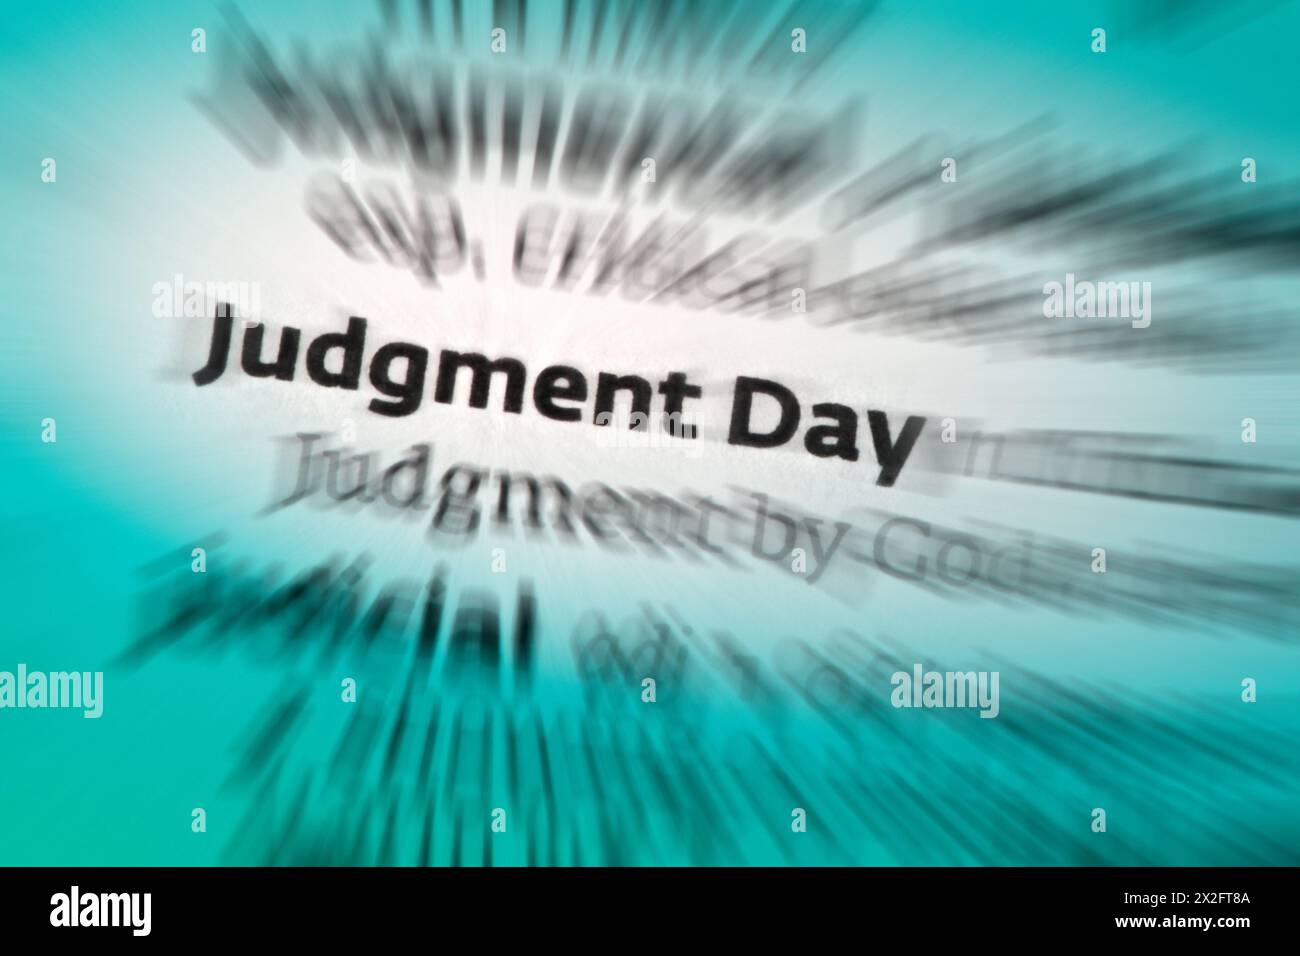 Judgement Day - die Zeit des jüngsten Gerichts; das Ende der Welt. Stockfoto